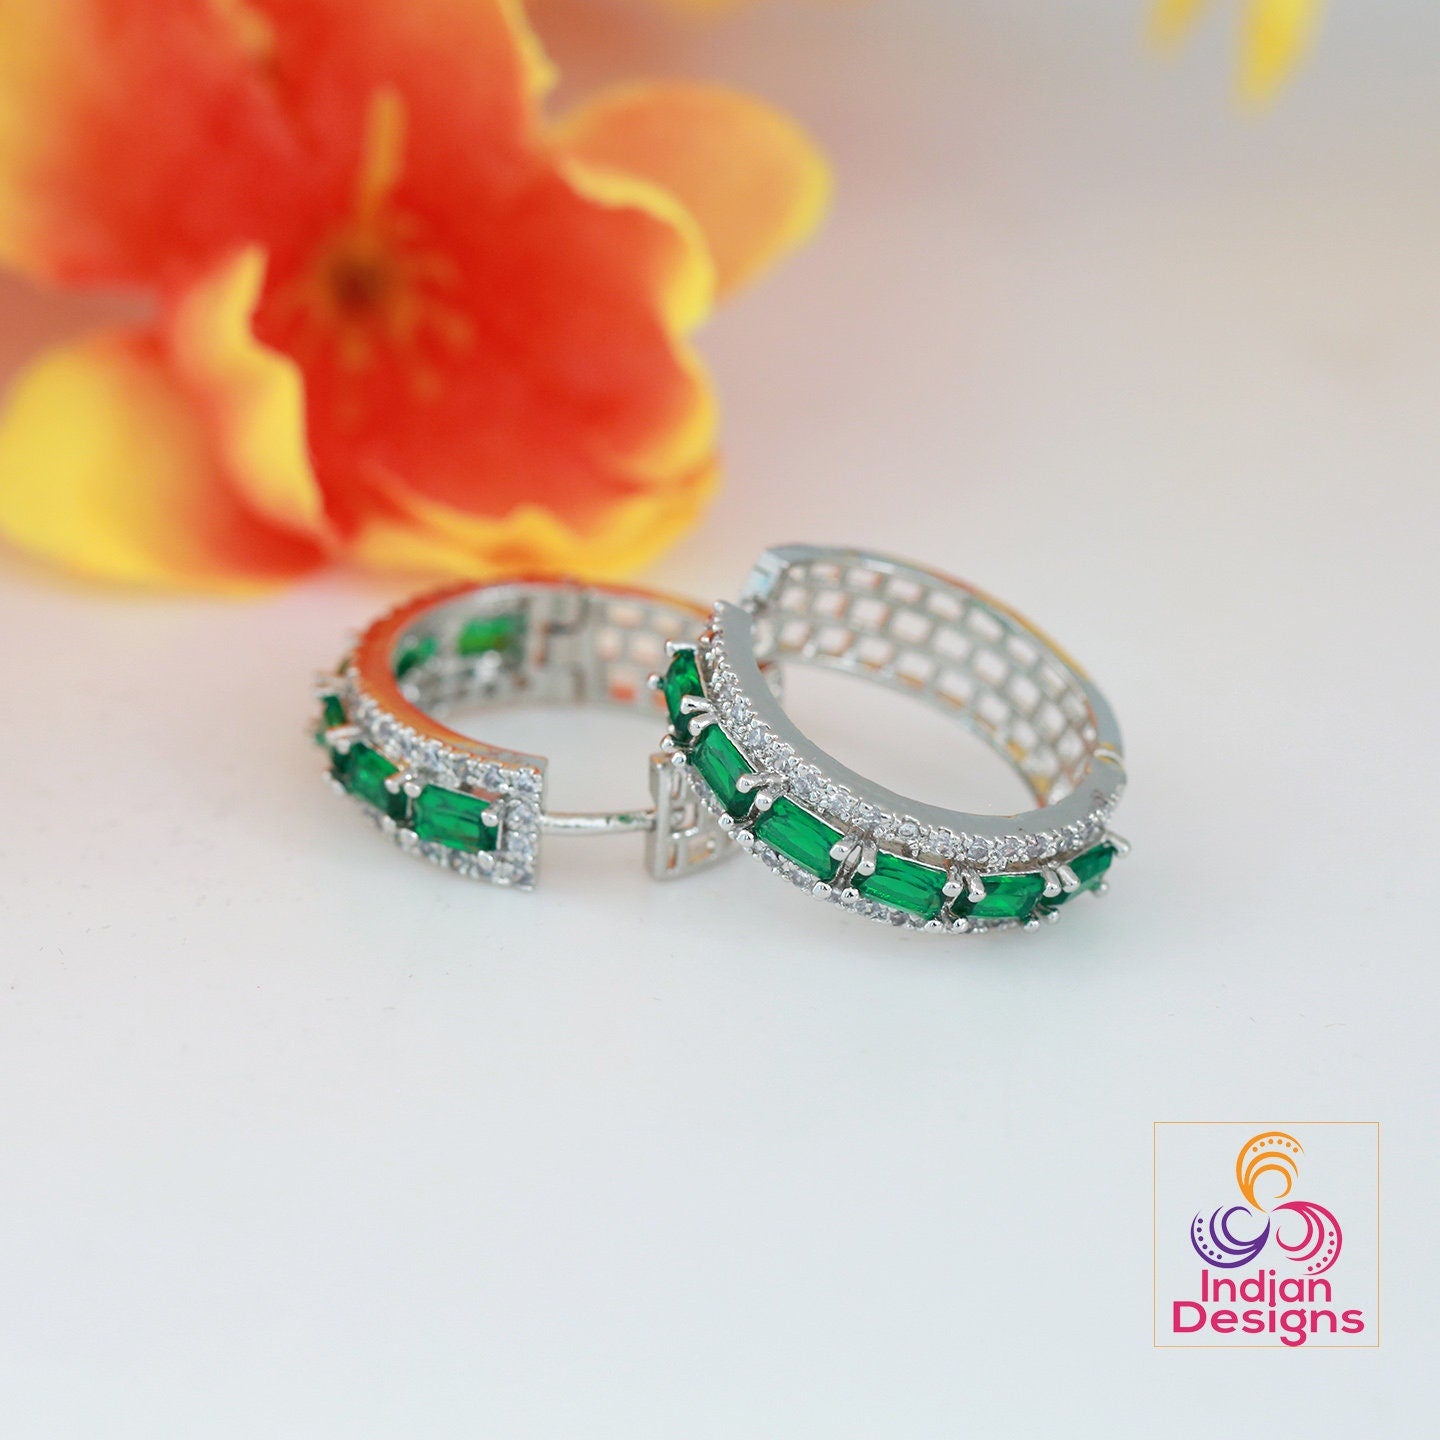 Minimalist CZ diamond Small hoop Earrings | American diamond Silver AD crystal hoop Earrings | Pink stone hoops | Earrings at Indian Designs